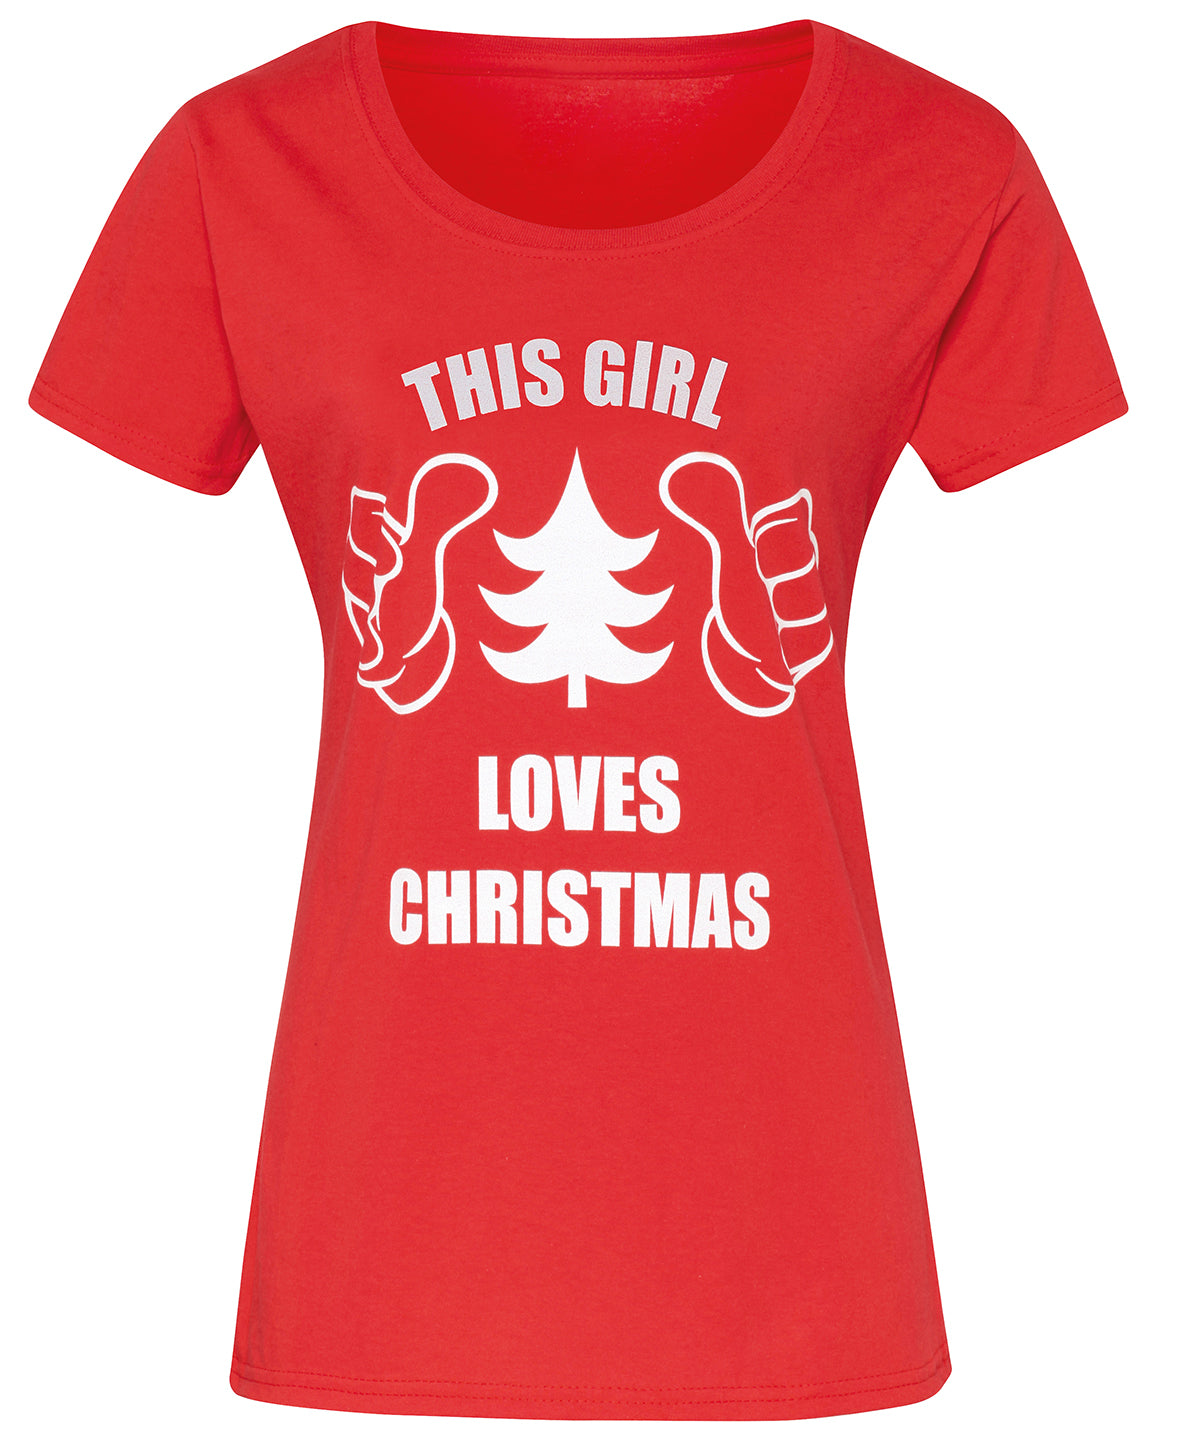 Stuttermabolir - Women's "This Girl Loves Christmas" Short Sleeve Tee